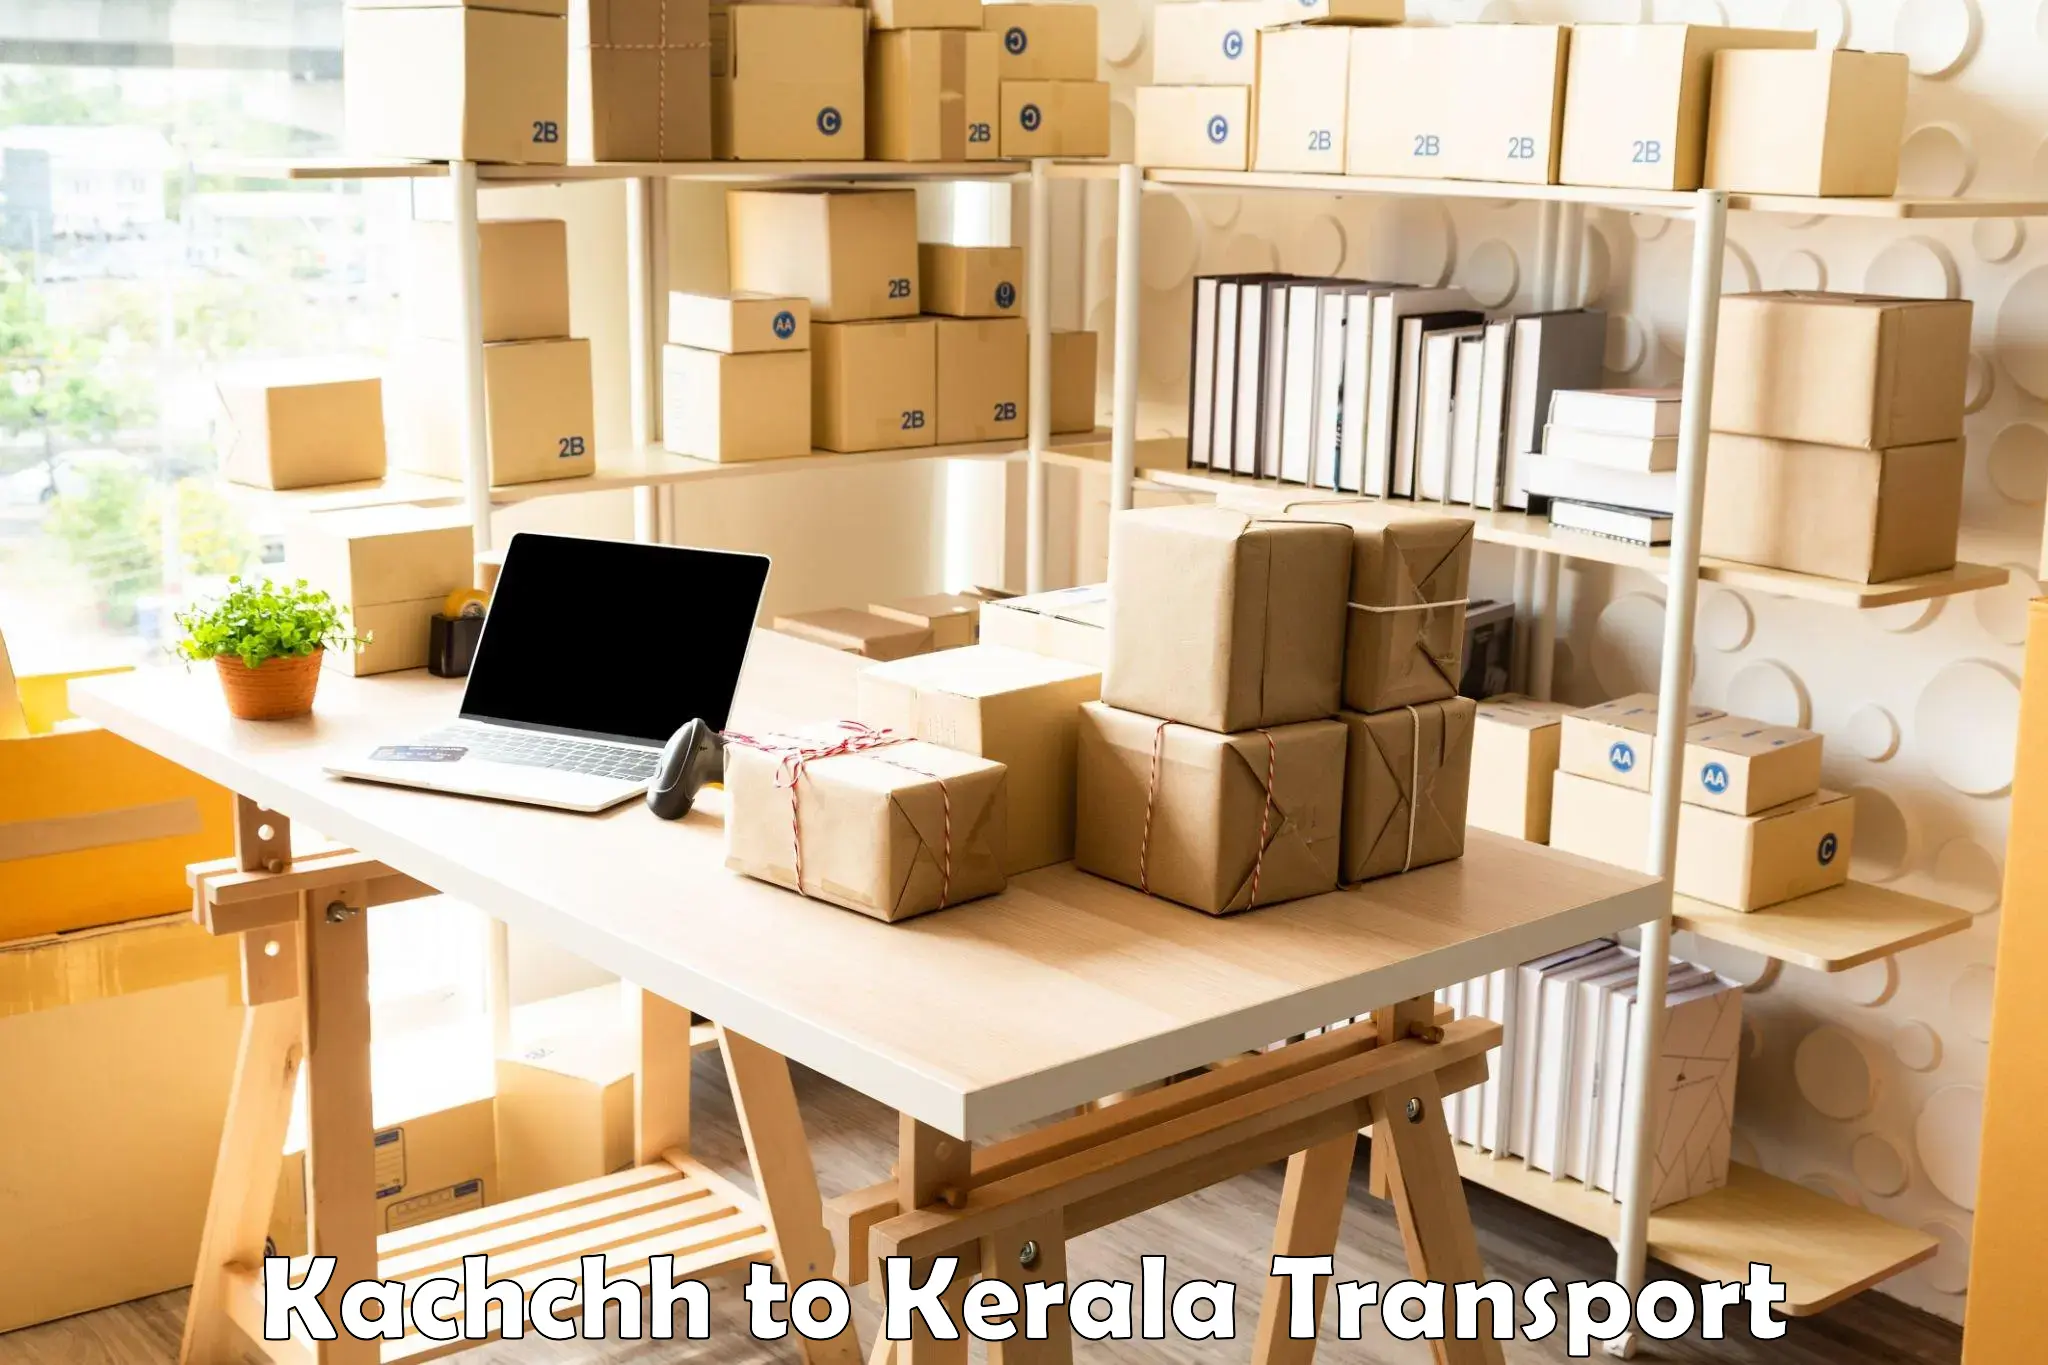 Cargo train transport services Kachchh to Alappuzha